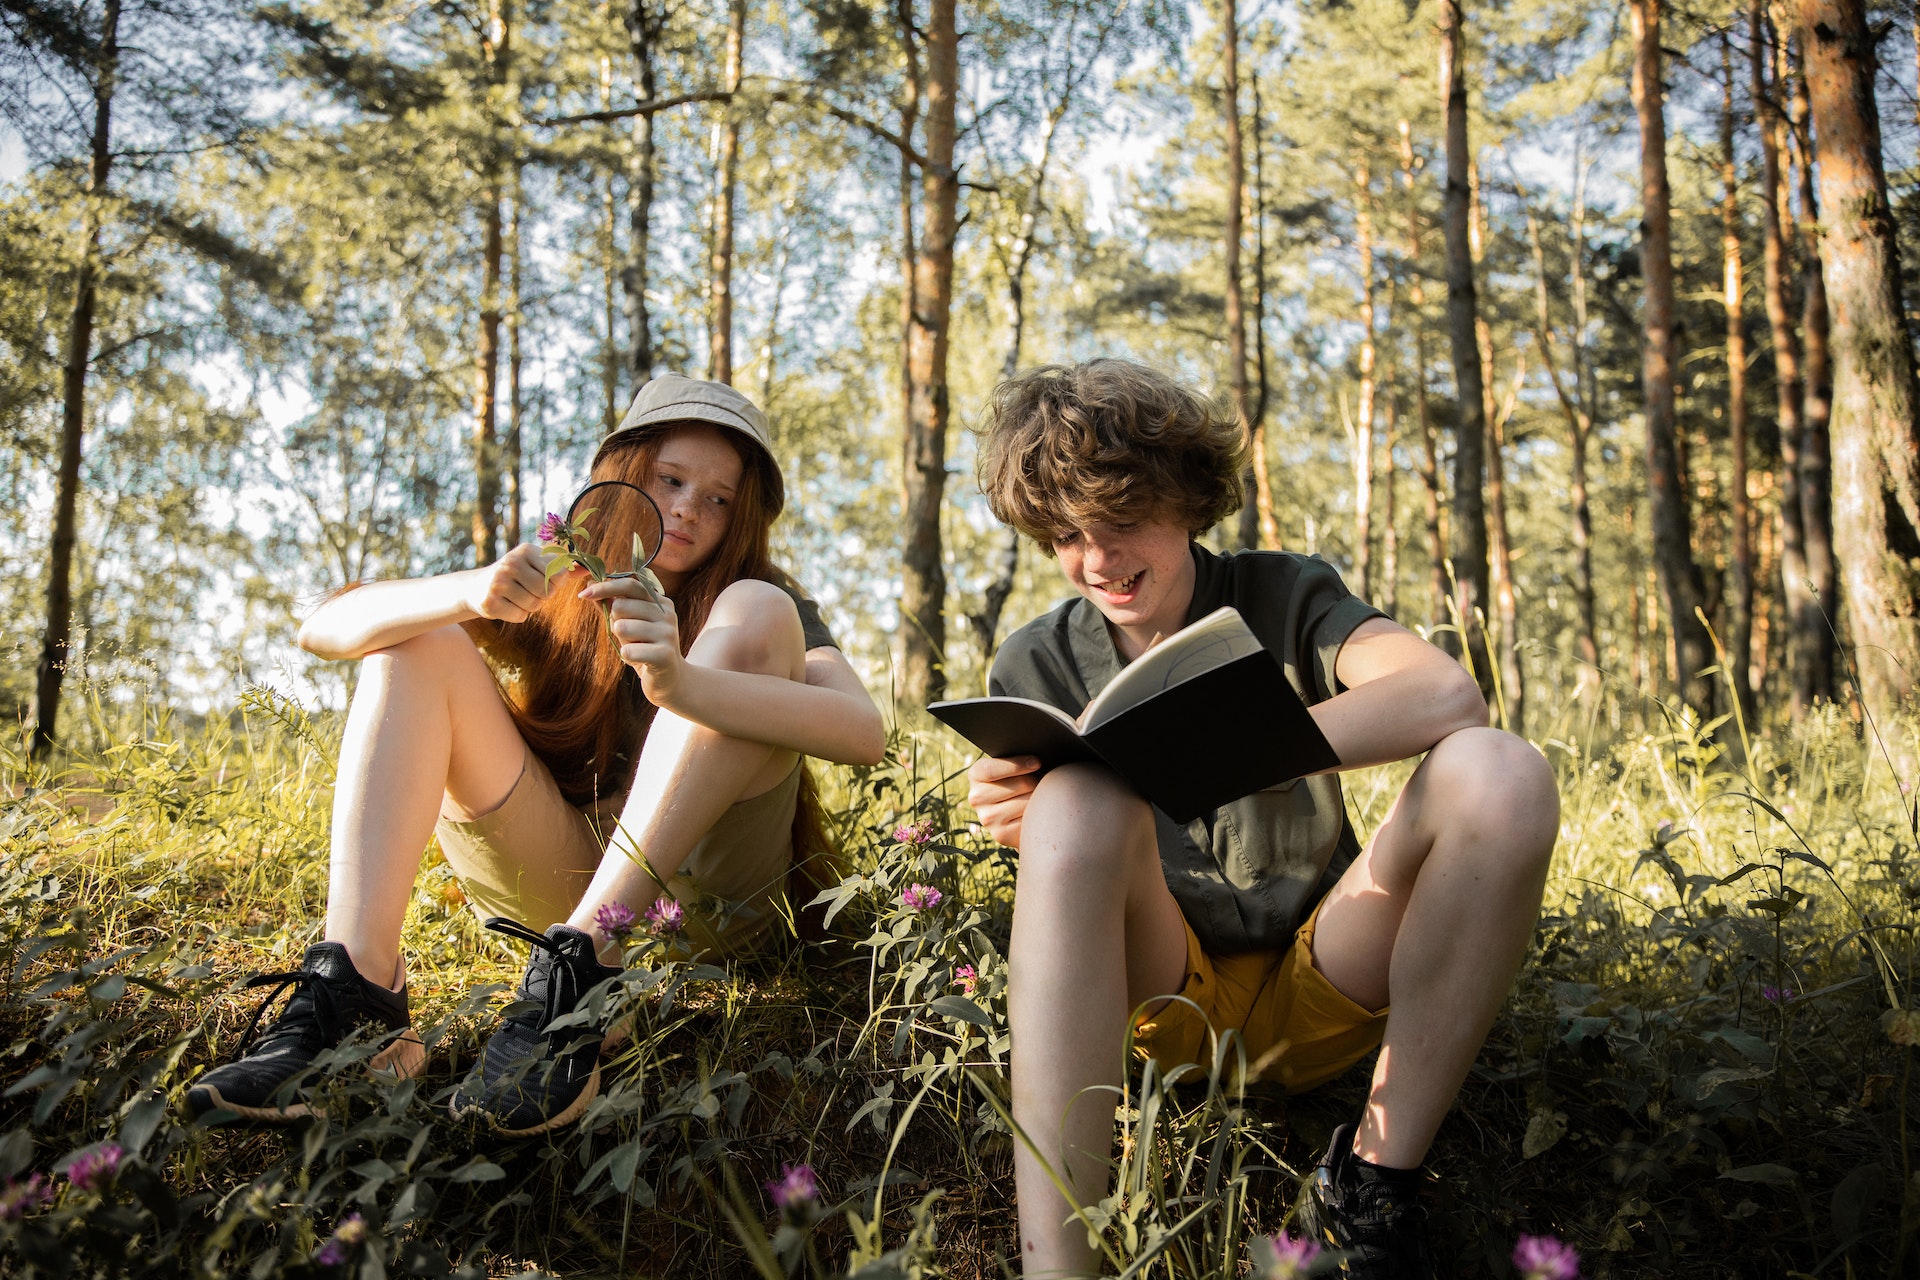 Pikkade punaste juustega tüdruk ja lokkis juustega poiss istuvad matkariietes metsas maas ja uurivad loodust. Noorte teadlaste klubi